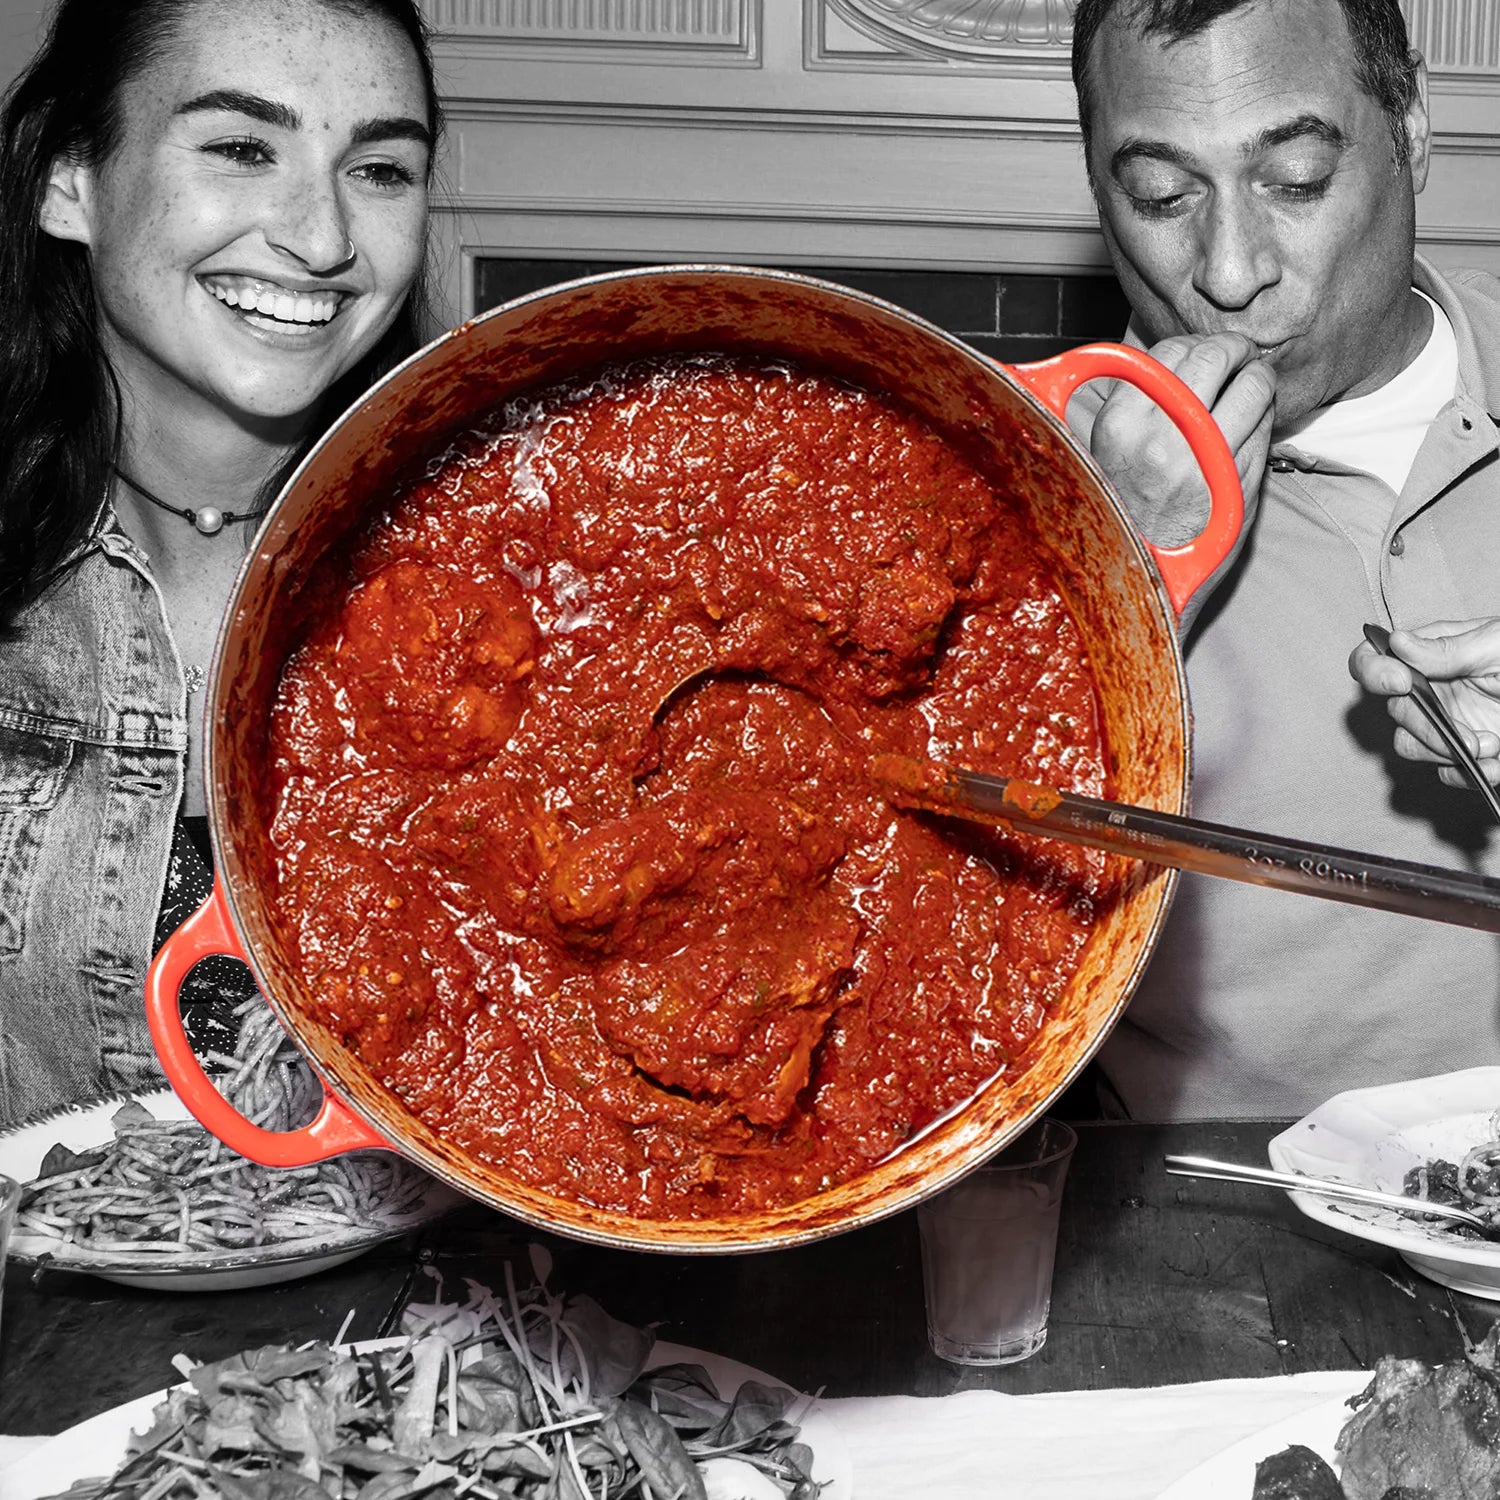 Tomato Basil Spaghetti Sauce, Low Carb, Keto Friendly, 24 Oz